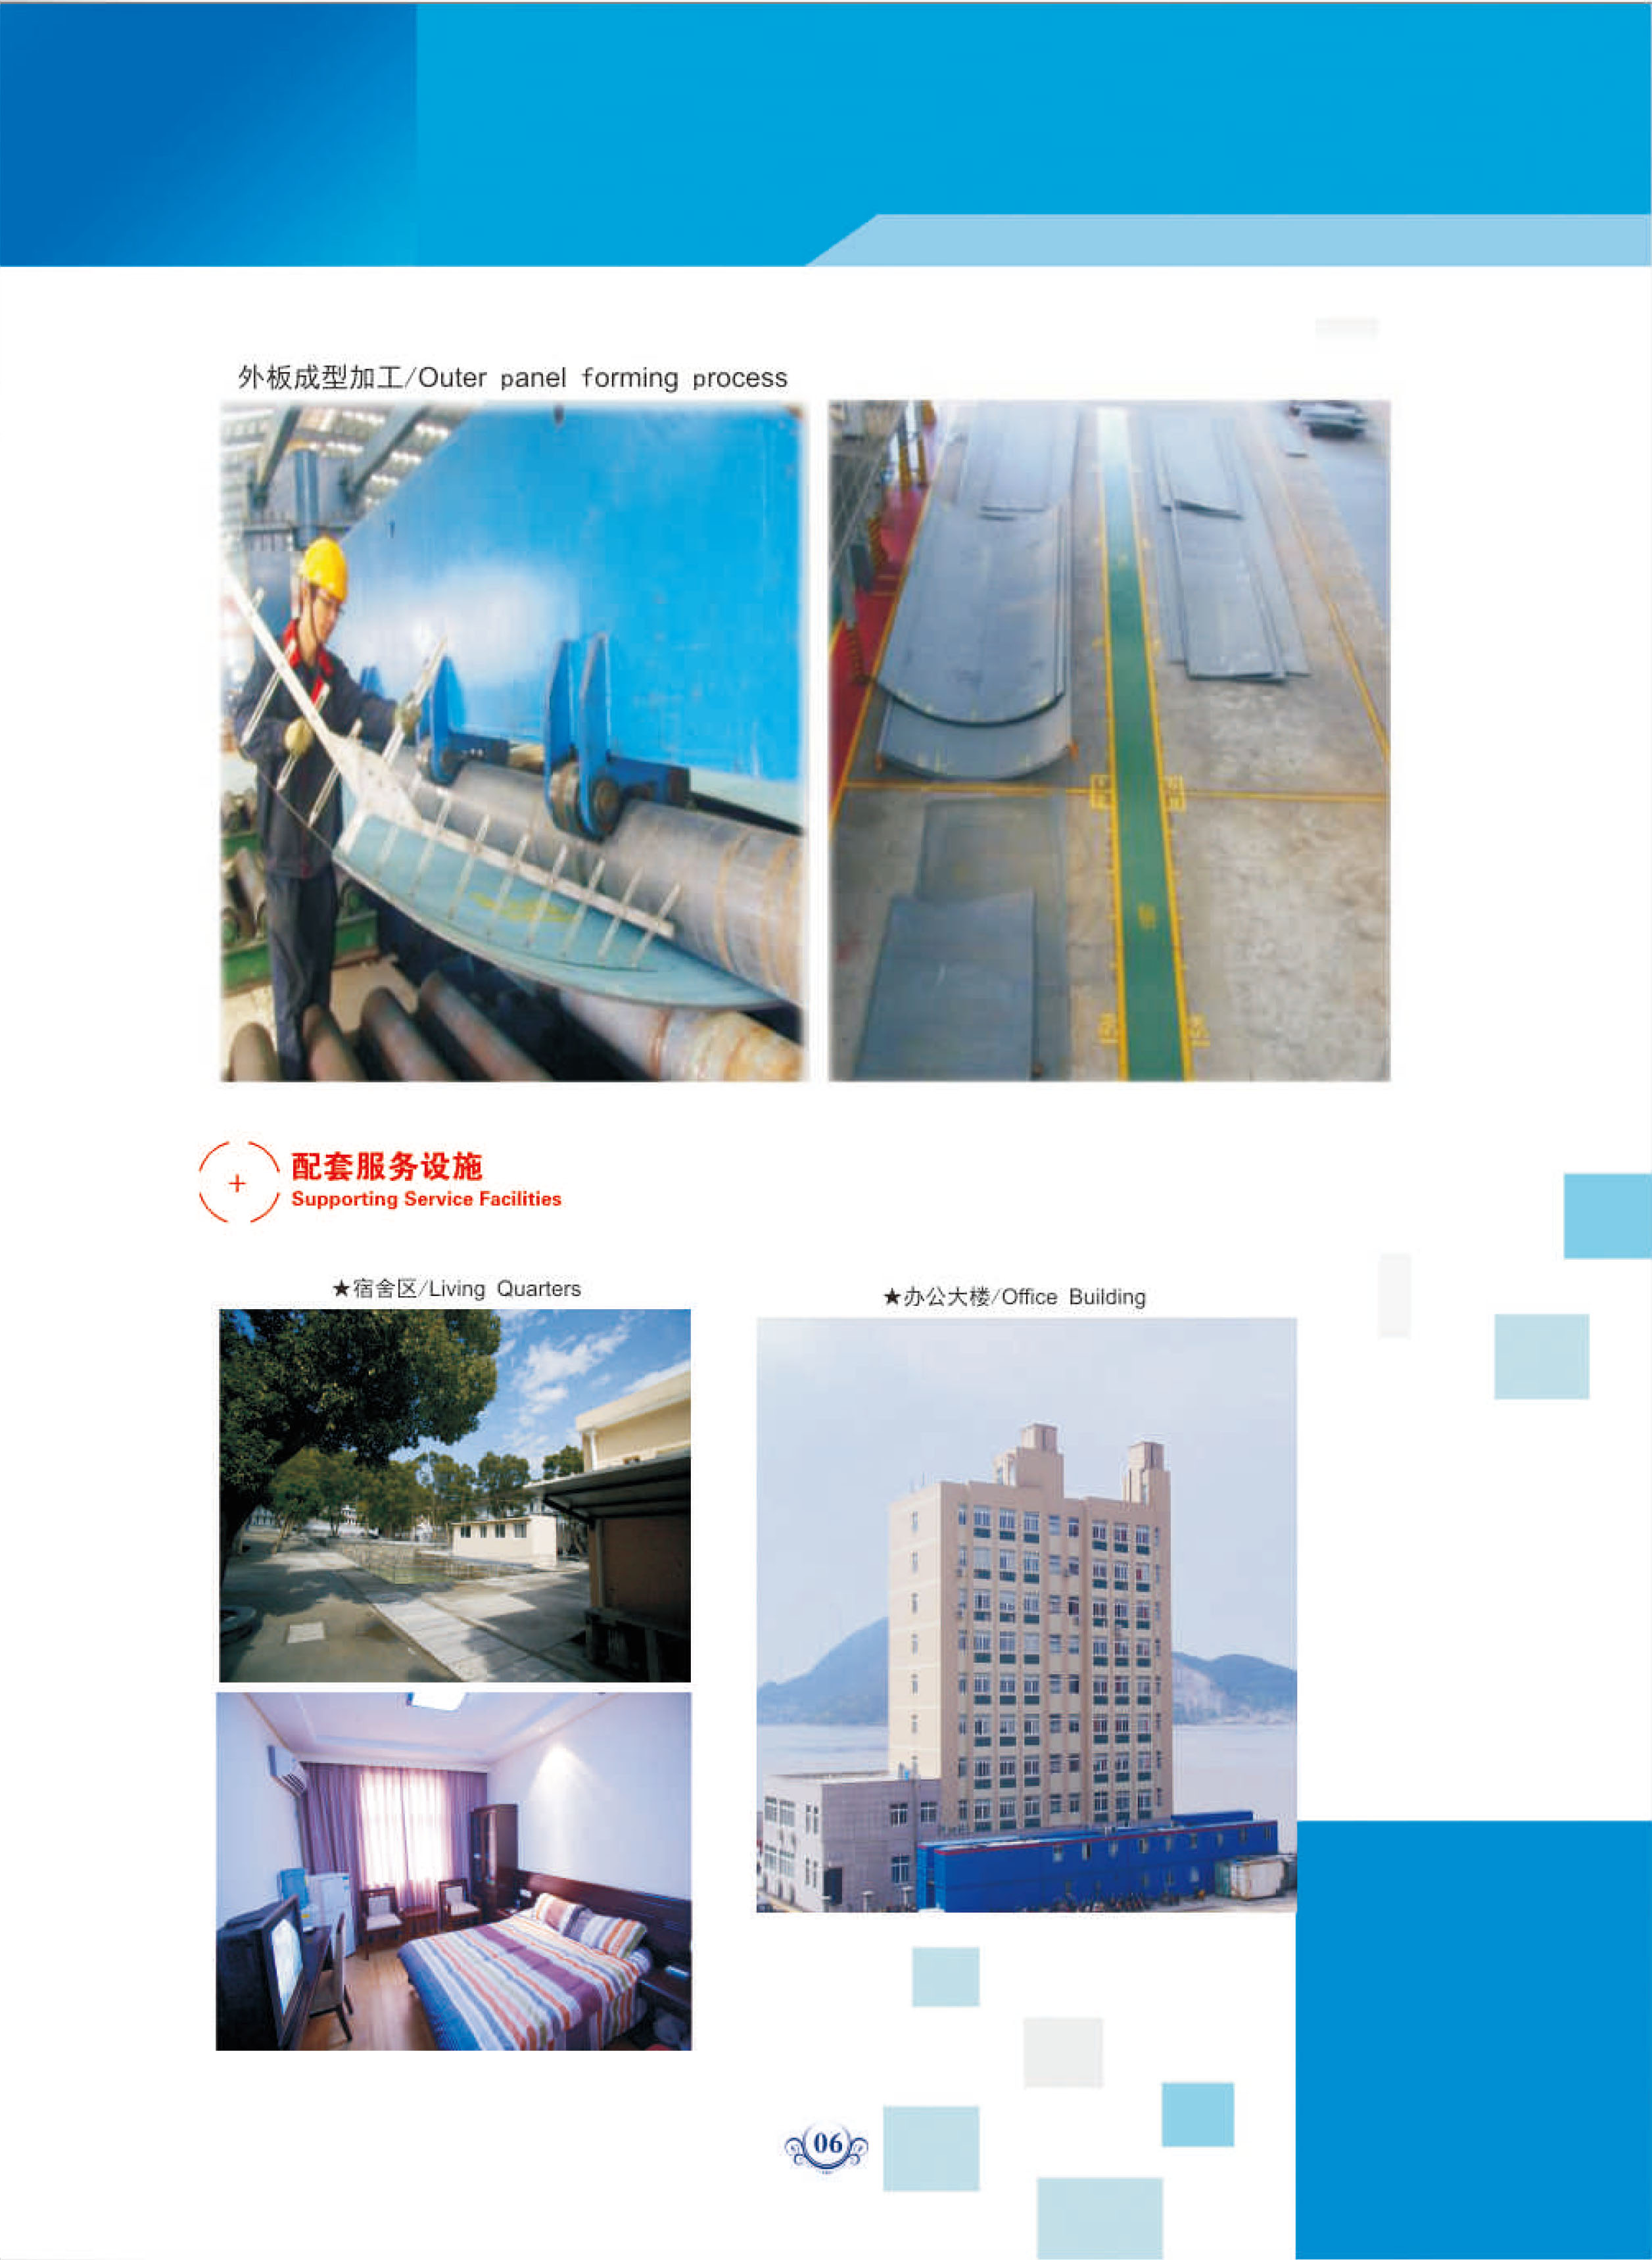 ZheJiang Peninsula Ship Industry Co.，Ltd(图8)